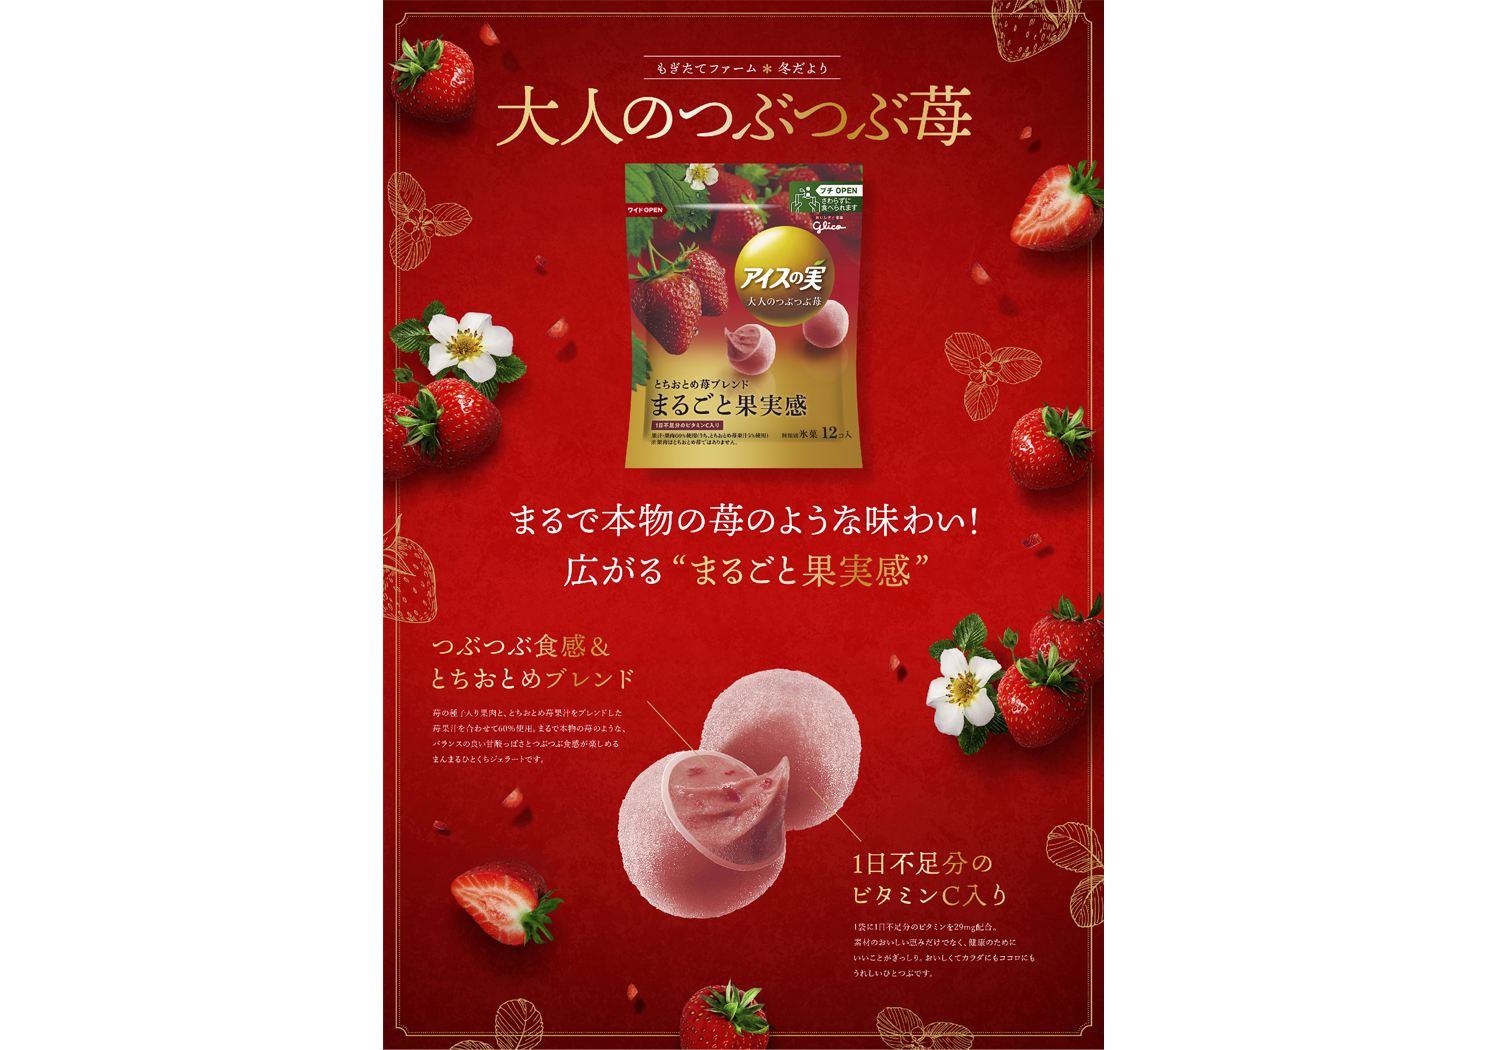 Glico icenomi strawberry